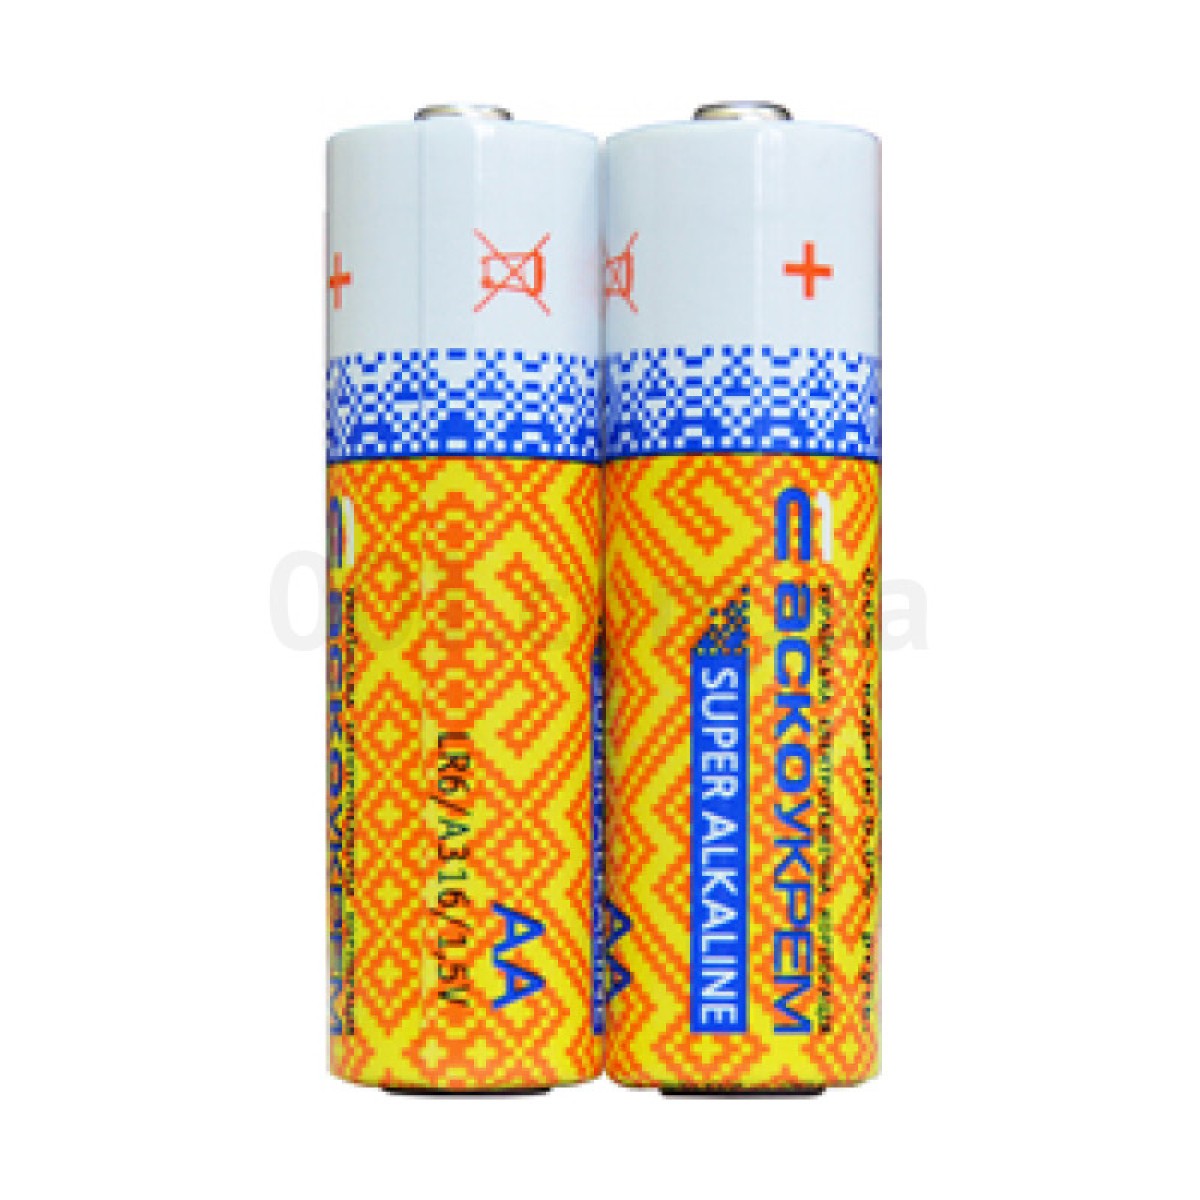 Батарейка лужна AА.LR6.SP2, типорозмір AA упаковка shrink 2 шт., АСКО-УКРЕМ 256_256.jpg